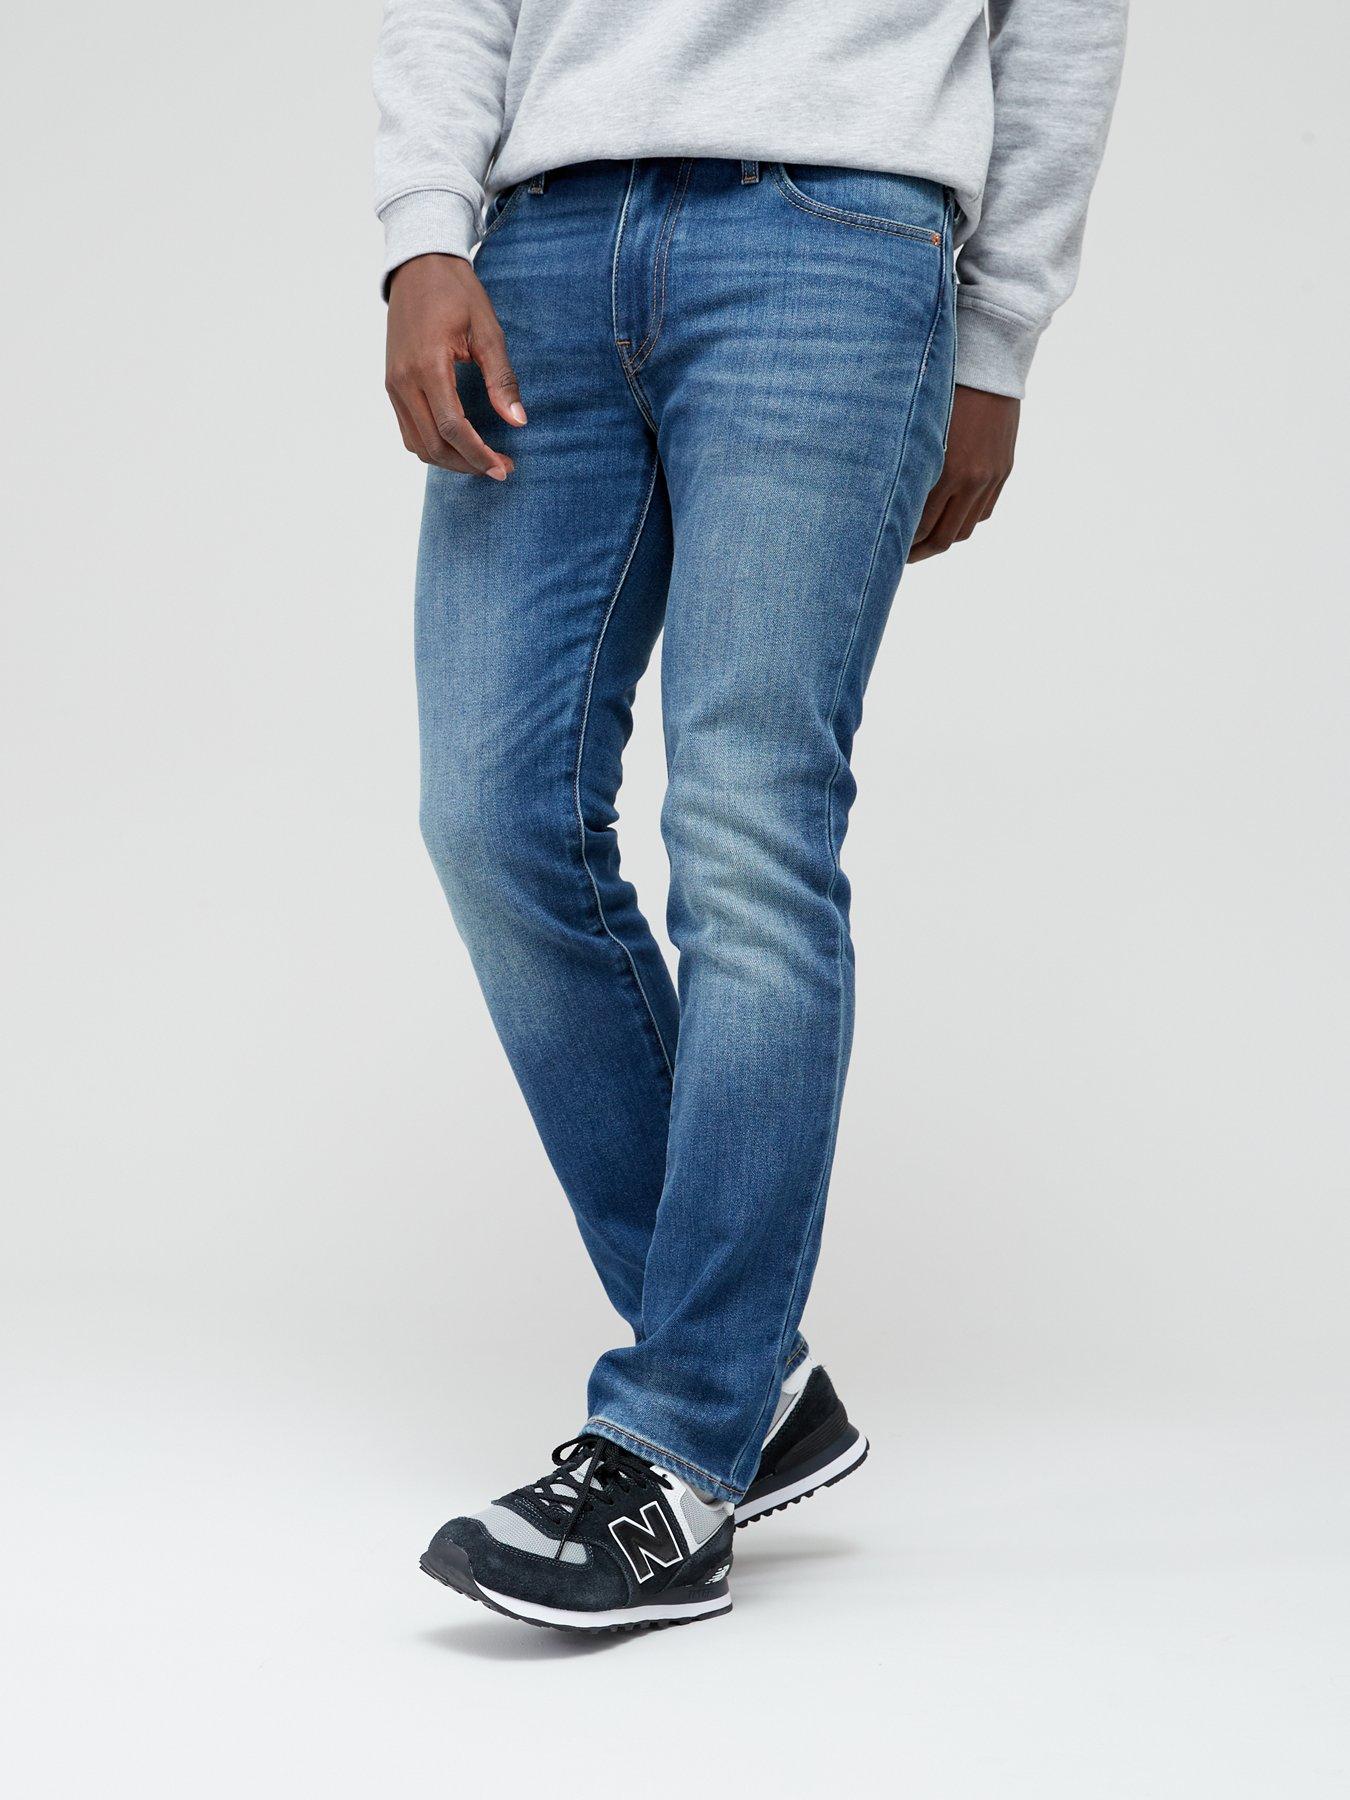 Levi's 511™ Slim Fit Jean - Medium Indigo 